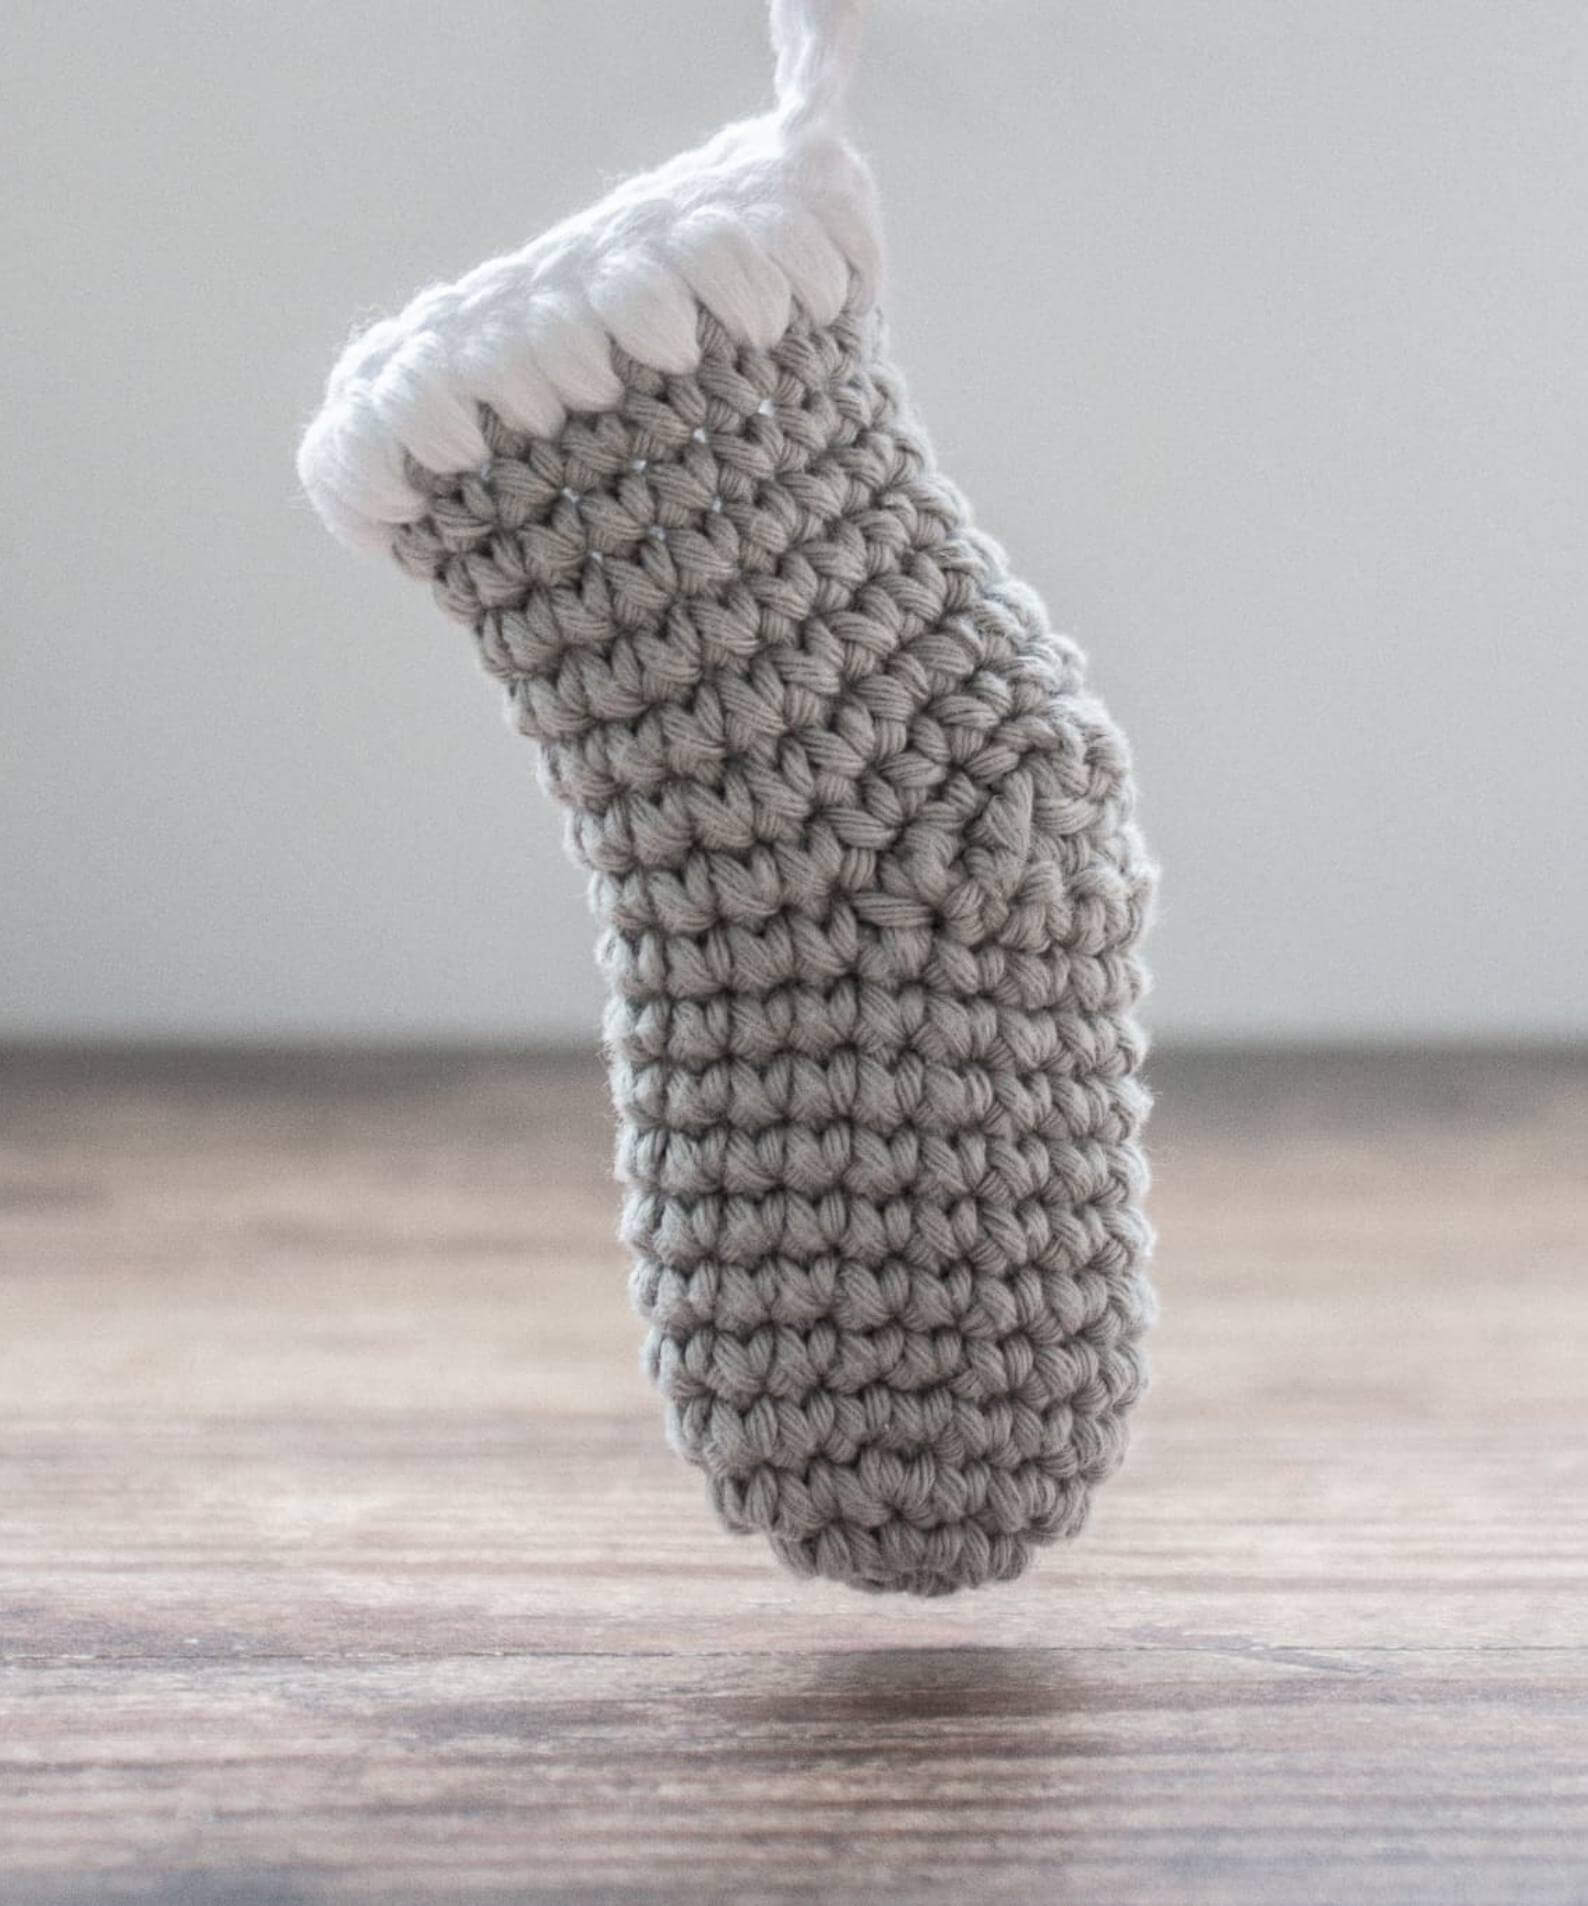 Crochet mini stocking with bobble cuff